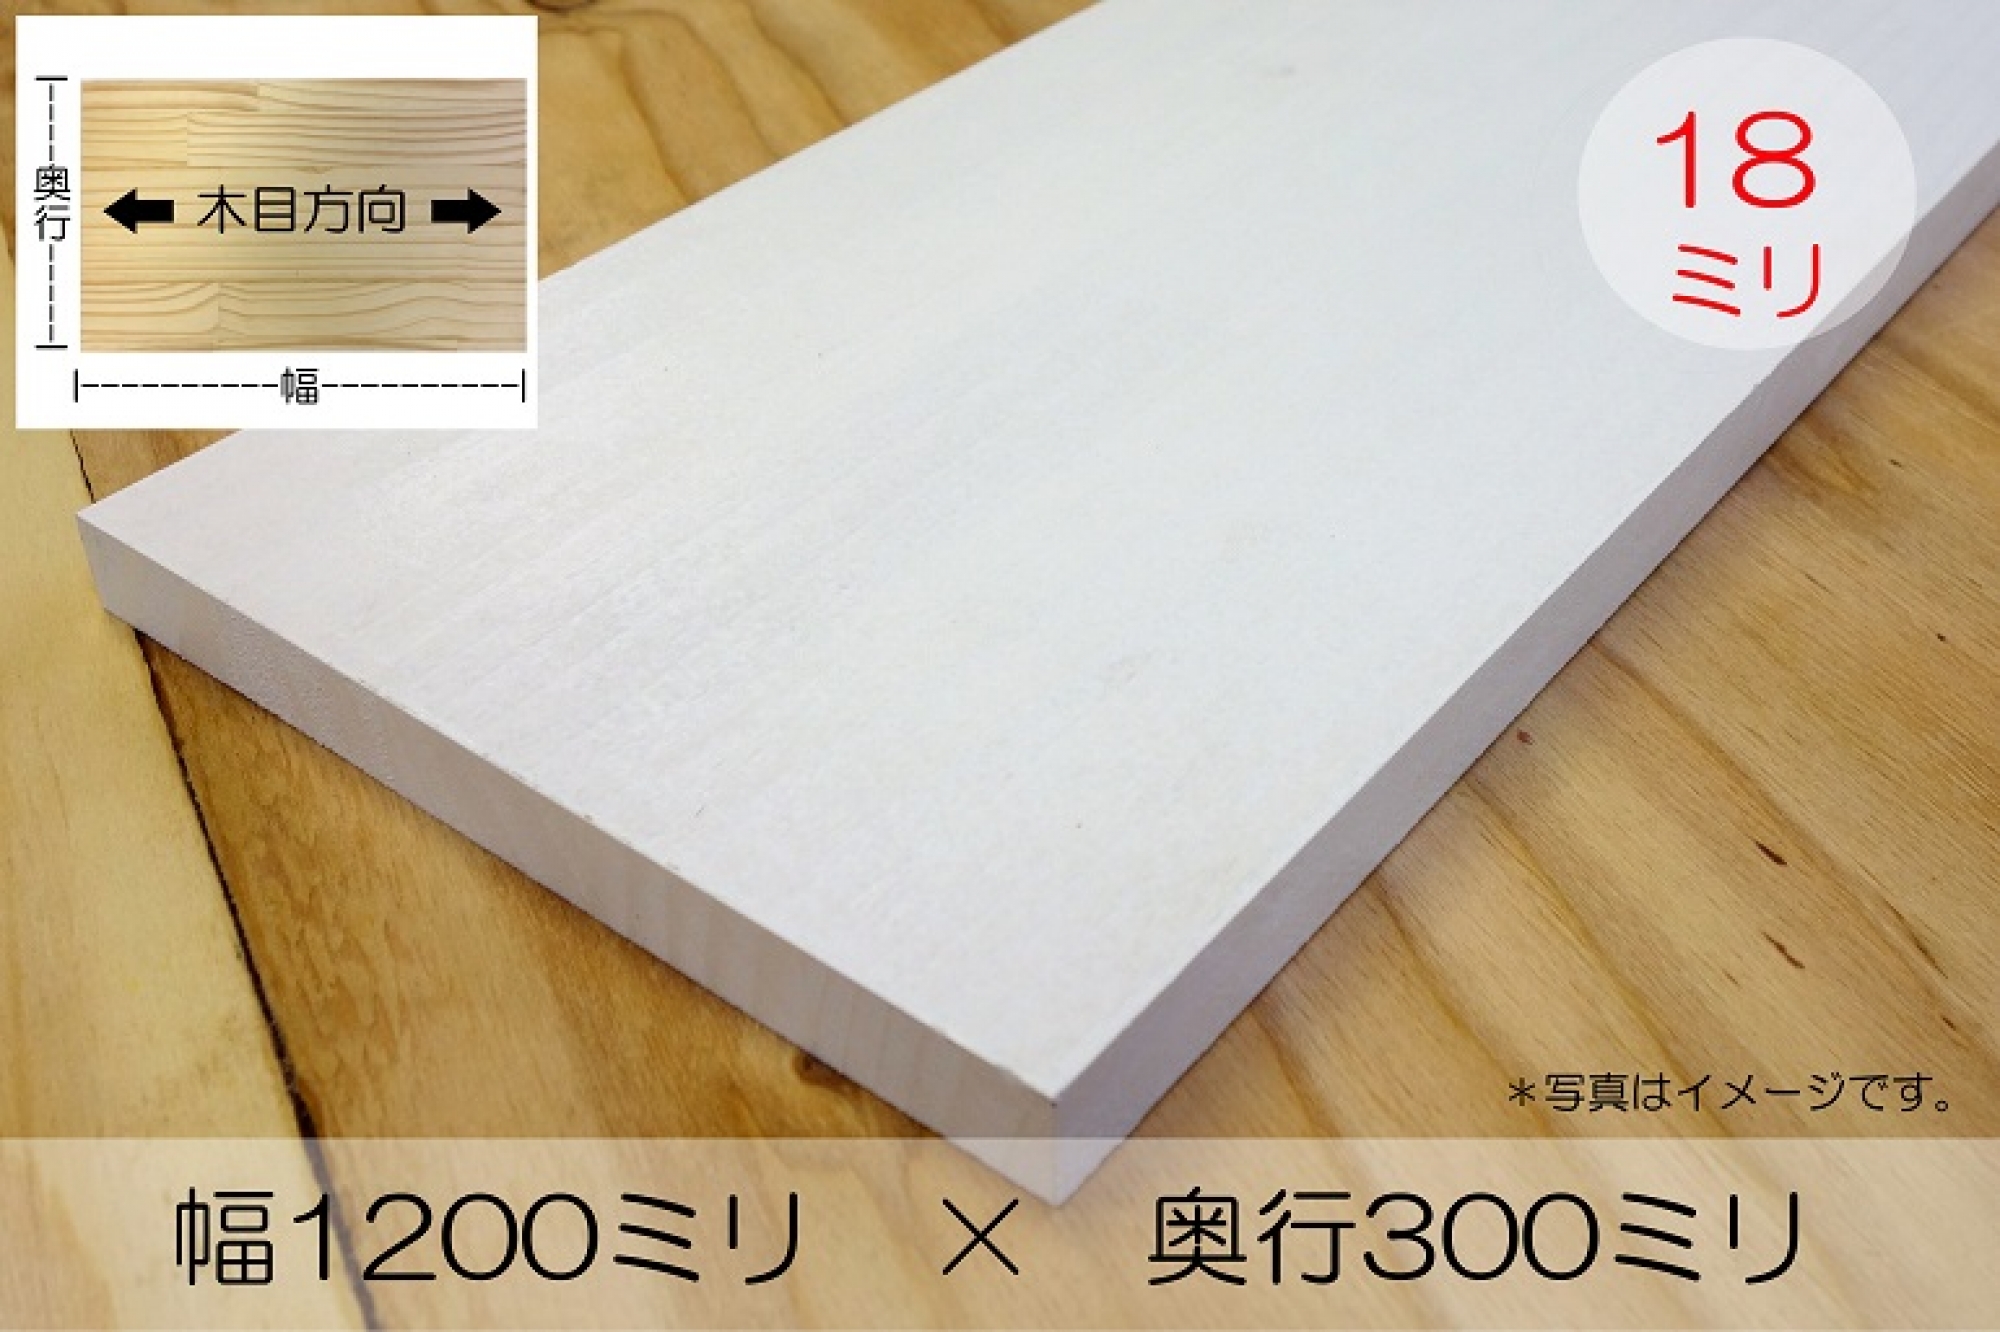 ホワイトバーチ集成材 25×300×1000 DIY 木材 無垢積層 端材同梱 長さ オリジナル mm オーダーカット無料 円形加工 塗装など